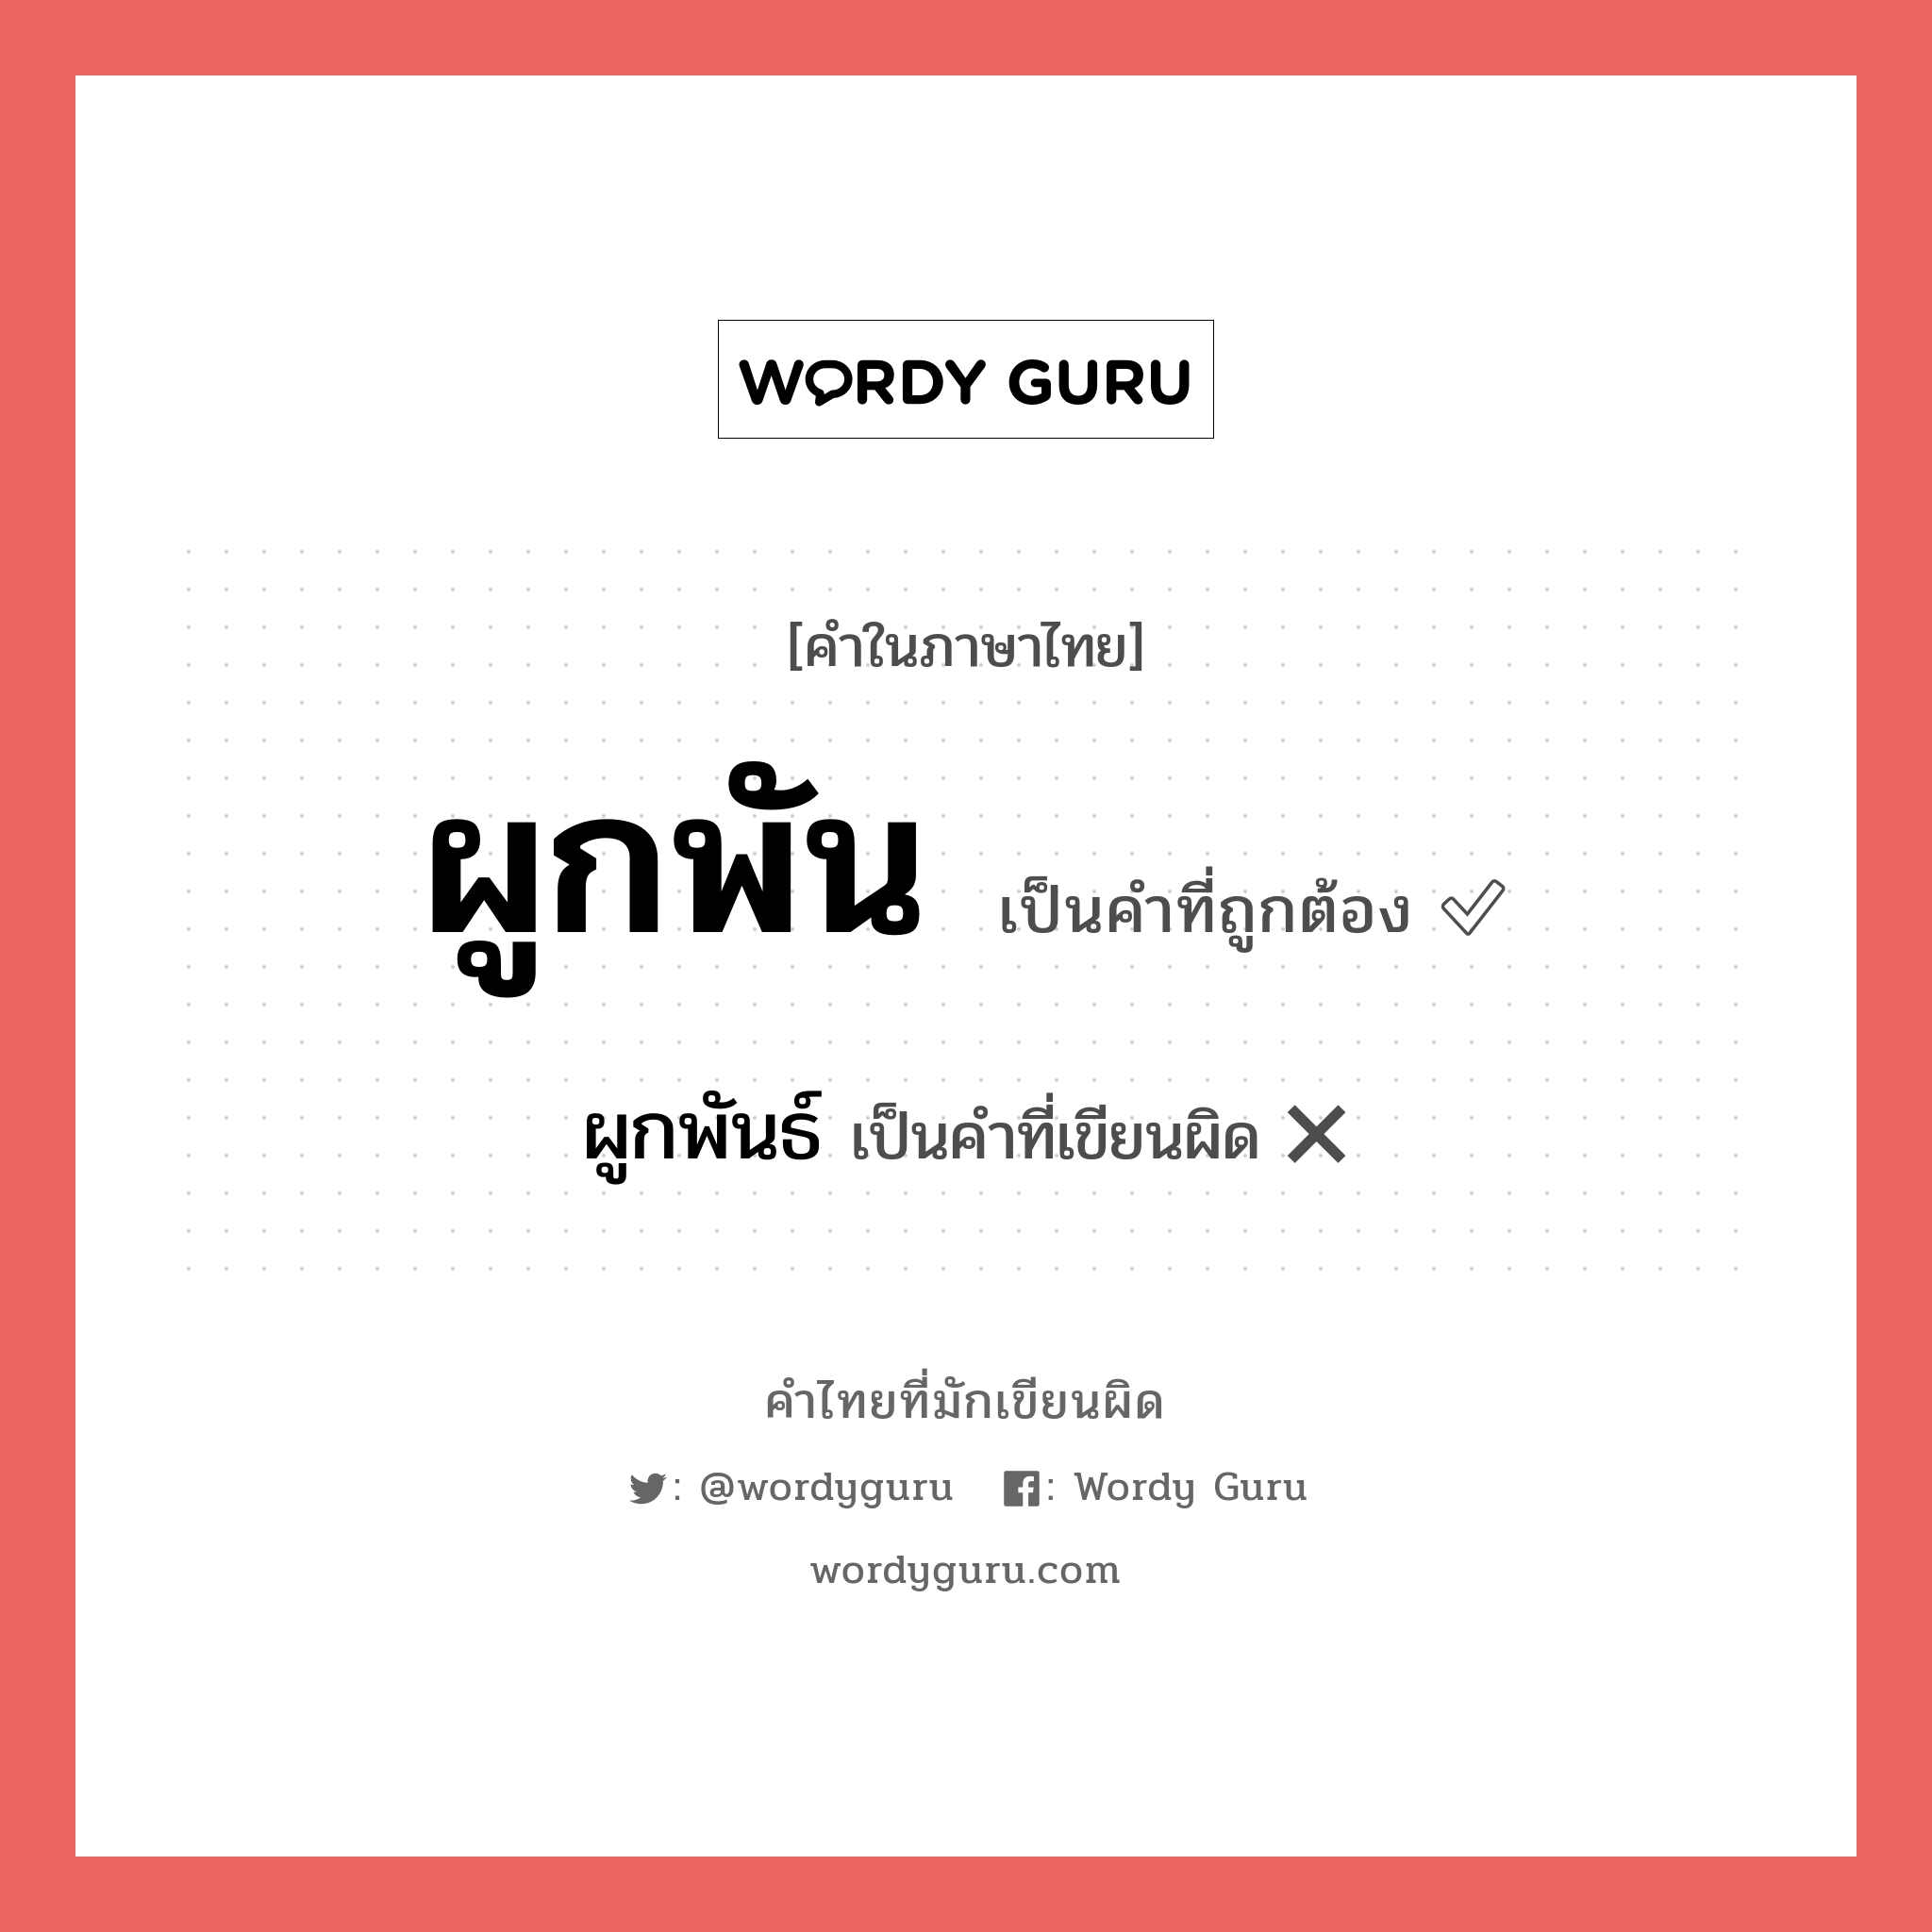 ผูกพันธ์ หรือ ผูกพัน คำไหนเขียนถูก?, คำในภาษาไทยที่มักเขียนผิด ผูกพันธ์ คำที่ผิด ❌ ผูกพัน